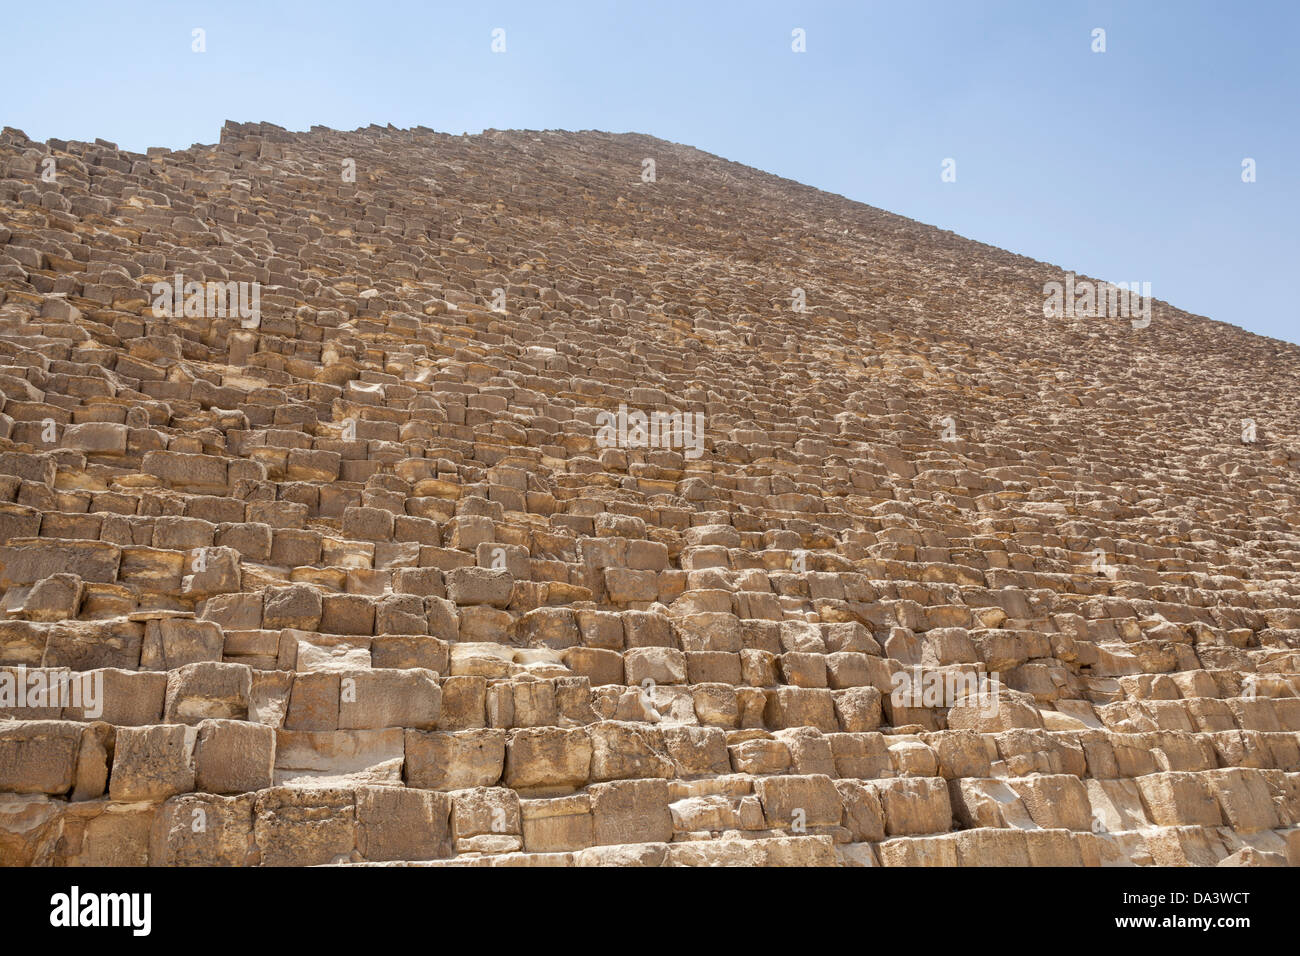 Grande pyramide de Gizeh, également connu sous le nom de pyramide de Chéops et la pyramide de Khéops, à Gizeh, Le Caire, Egypte Banque D'Images